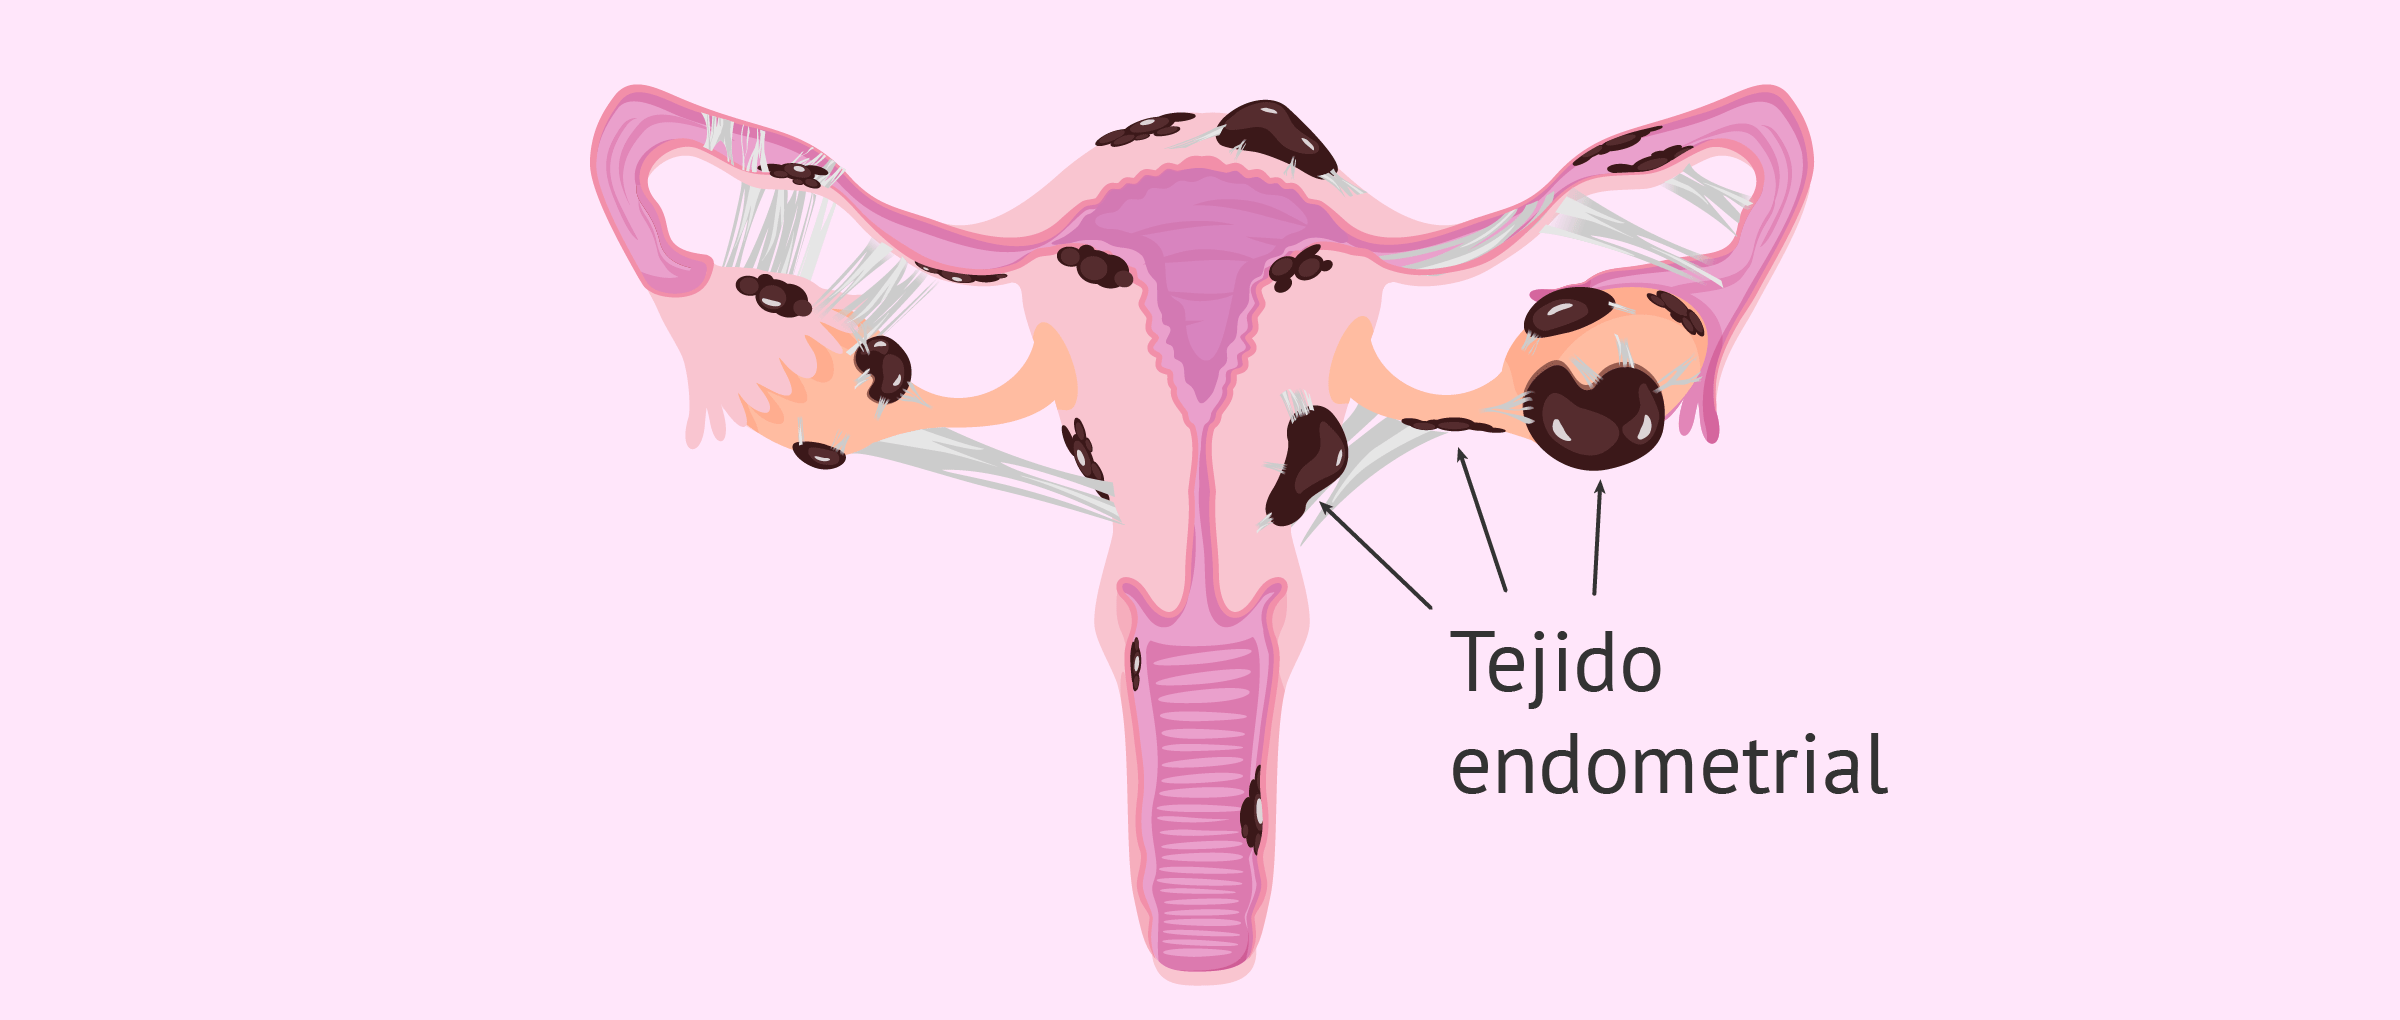 Endometriosis severa con quistes y endometriomas